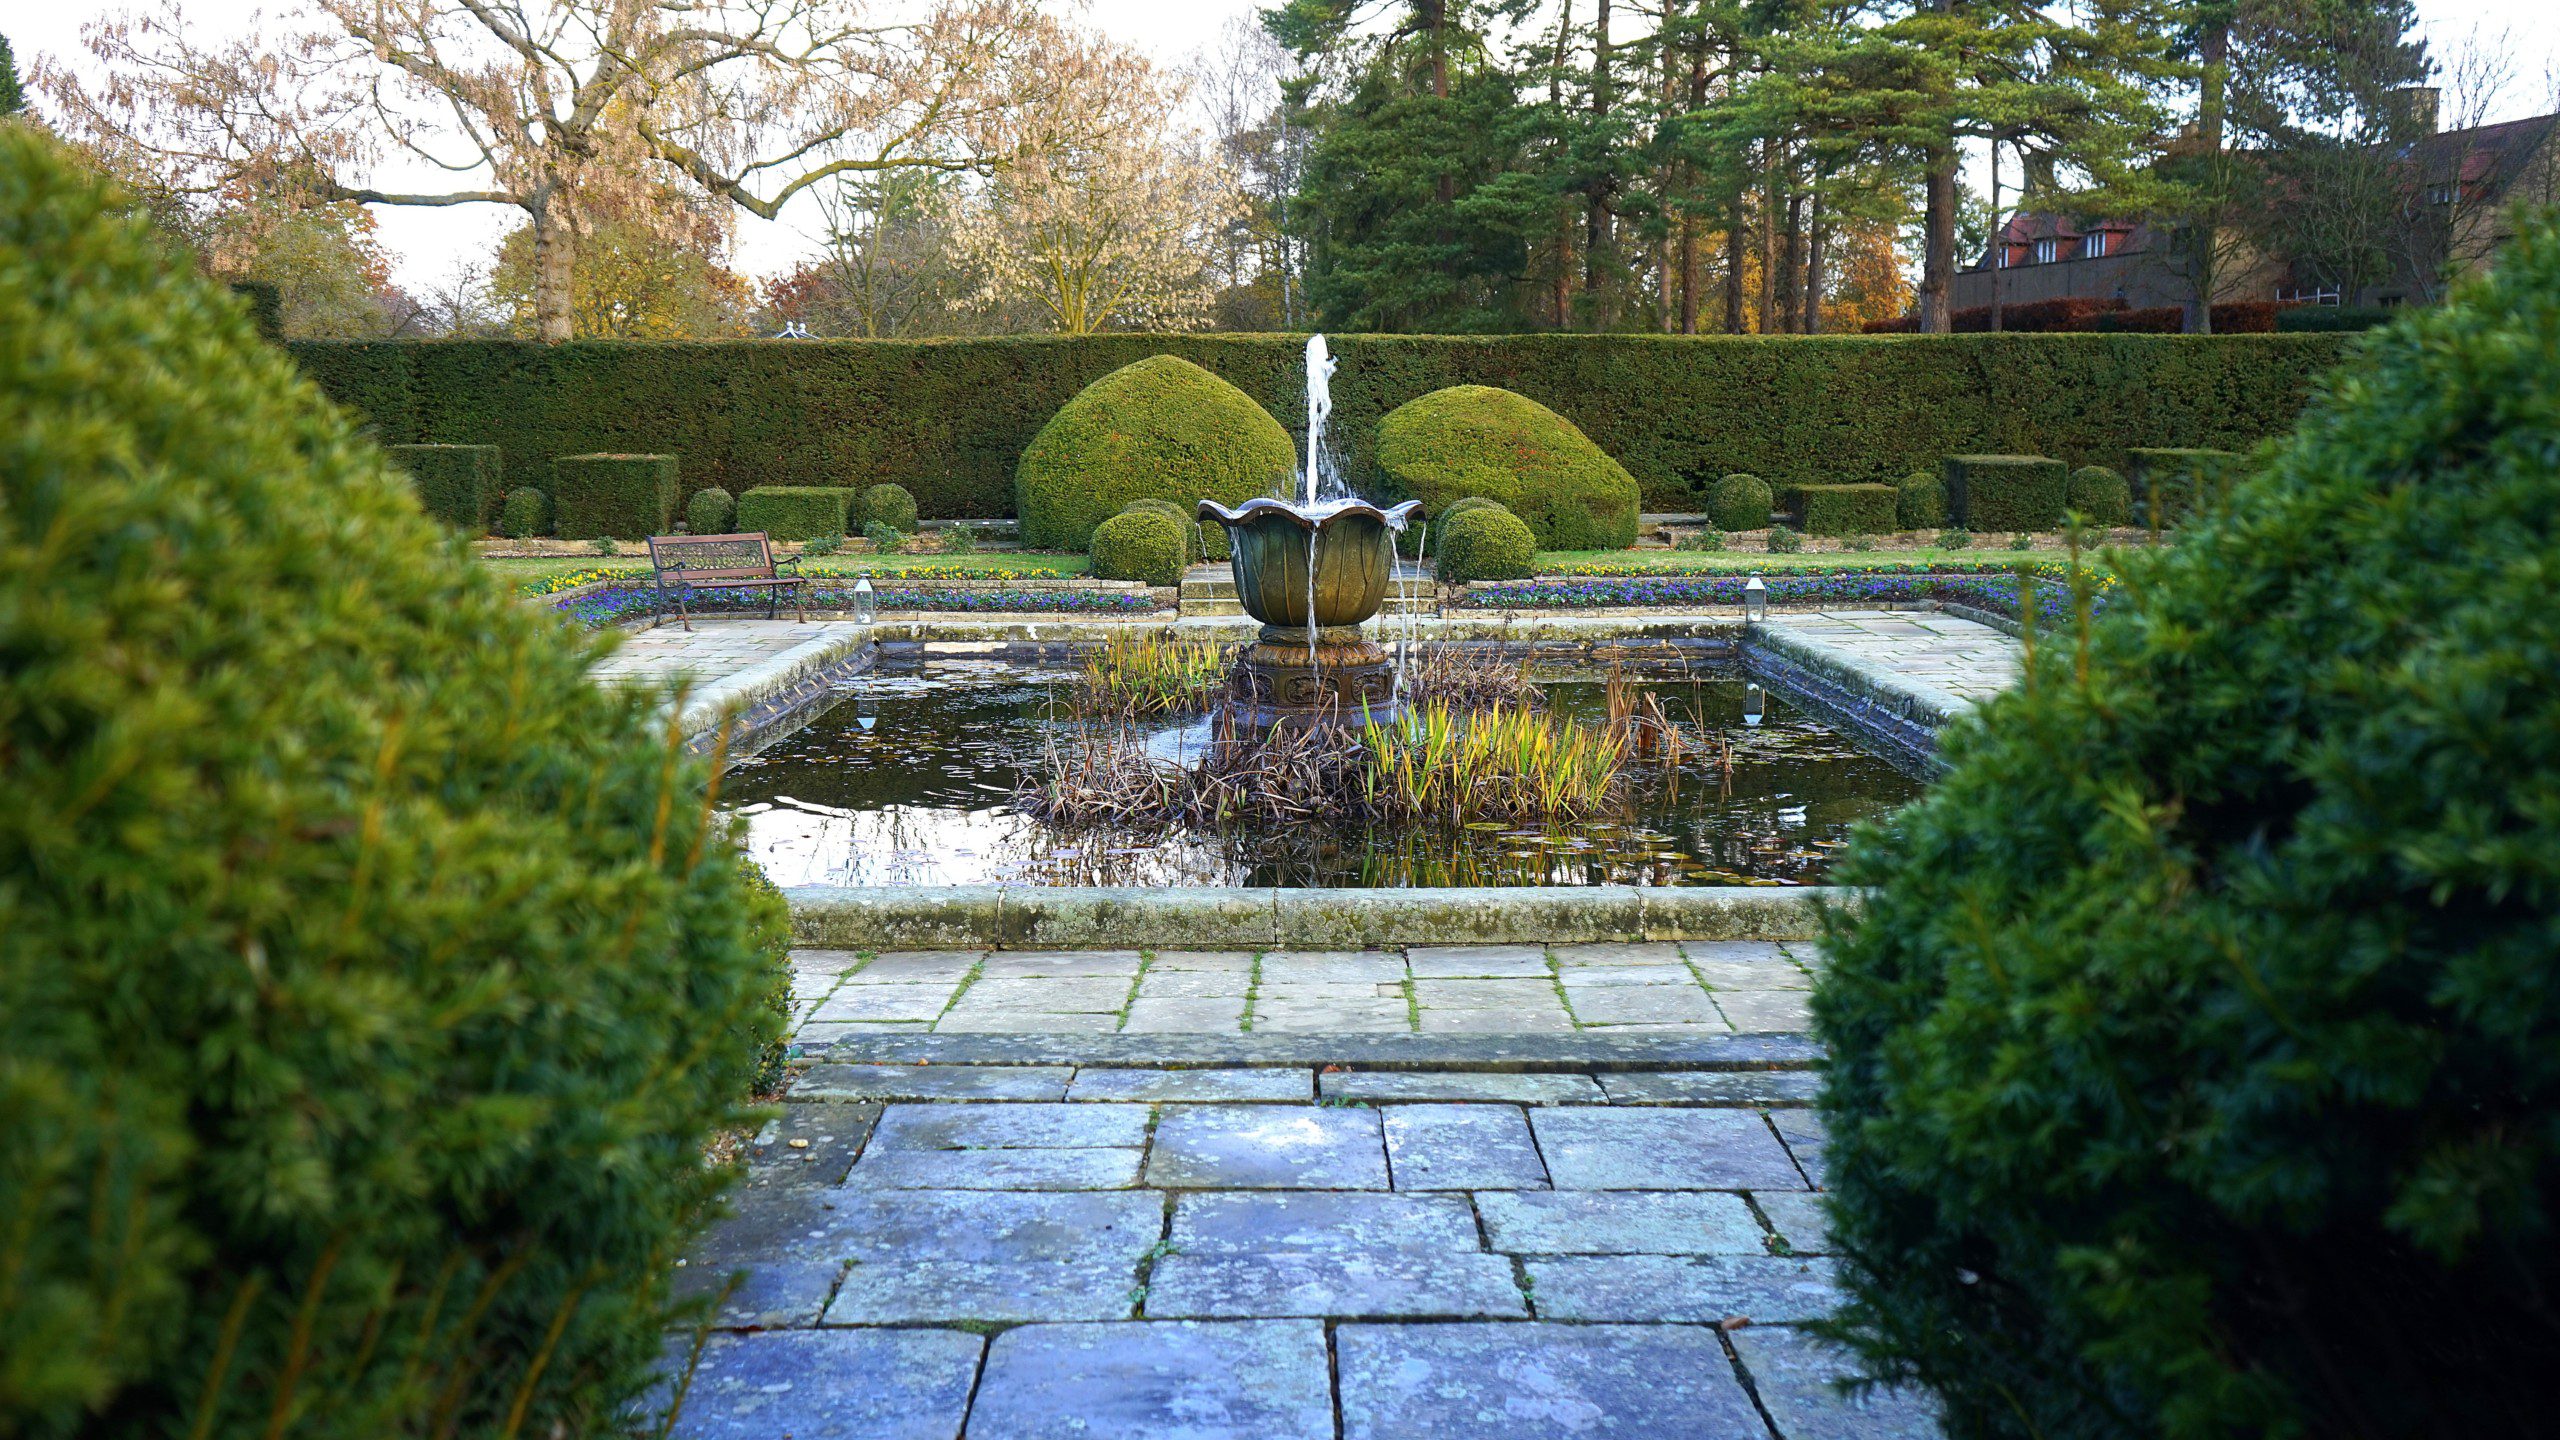  Imagem de uma fonte de água no centro de um jardim com bastante áreas verdes. 